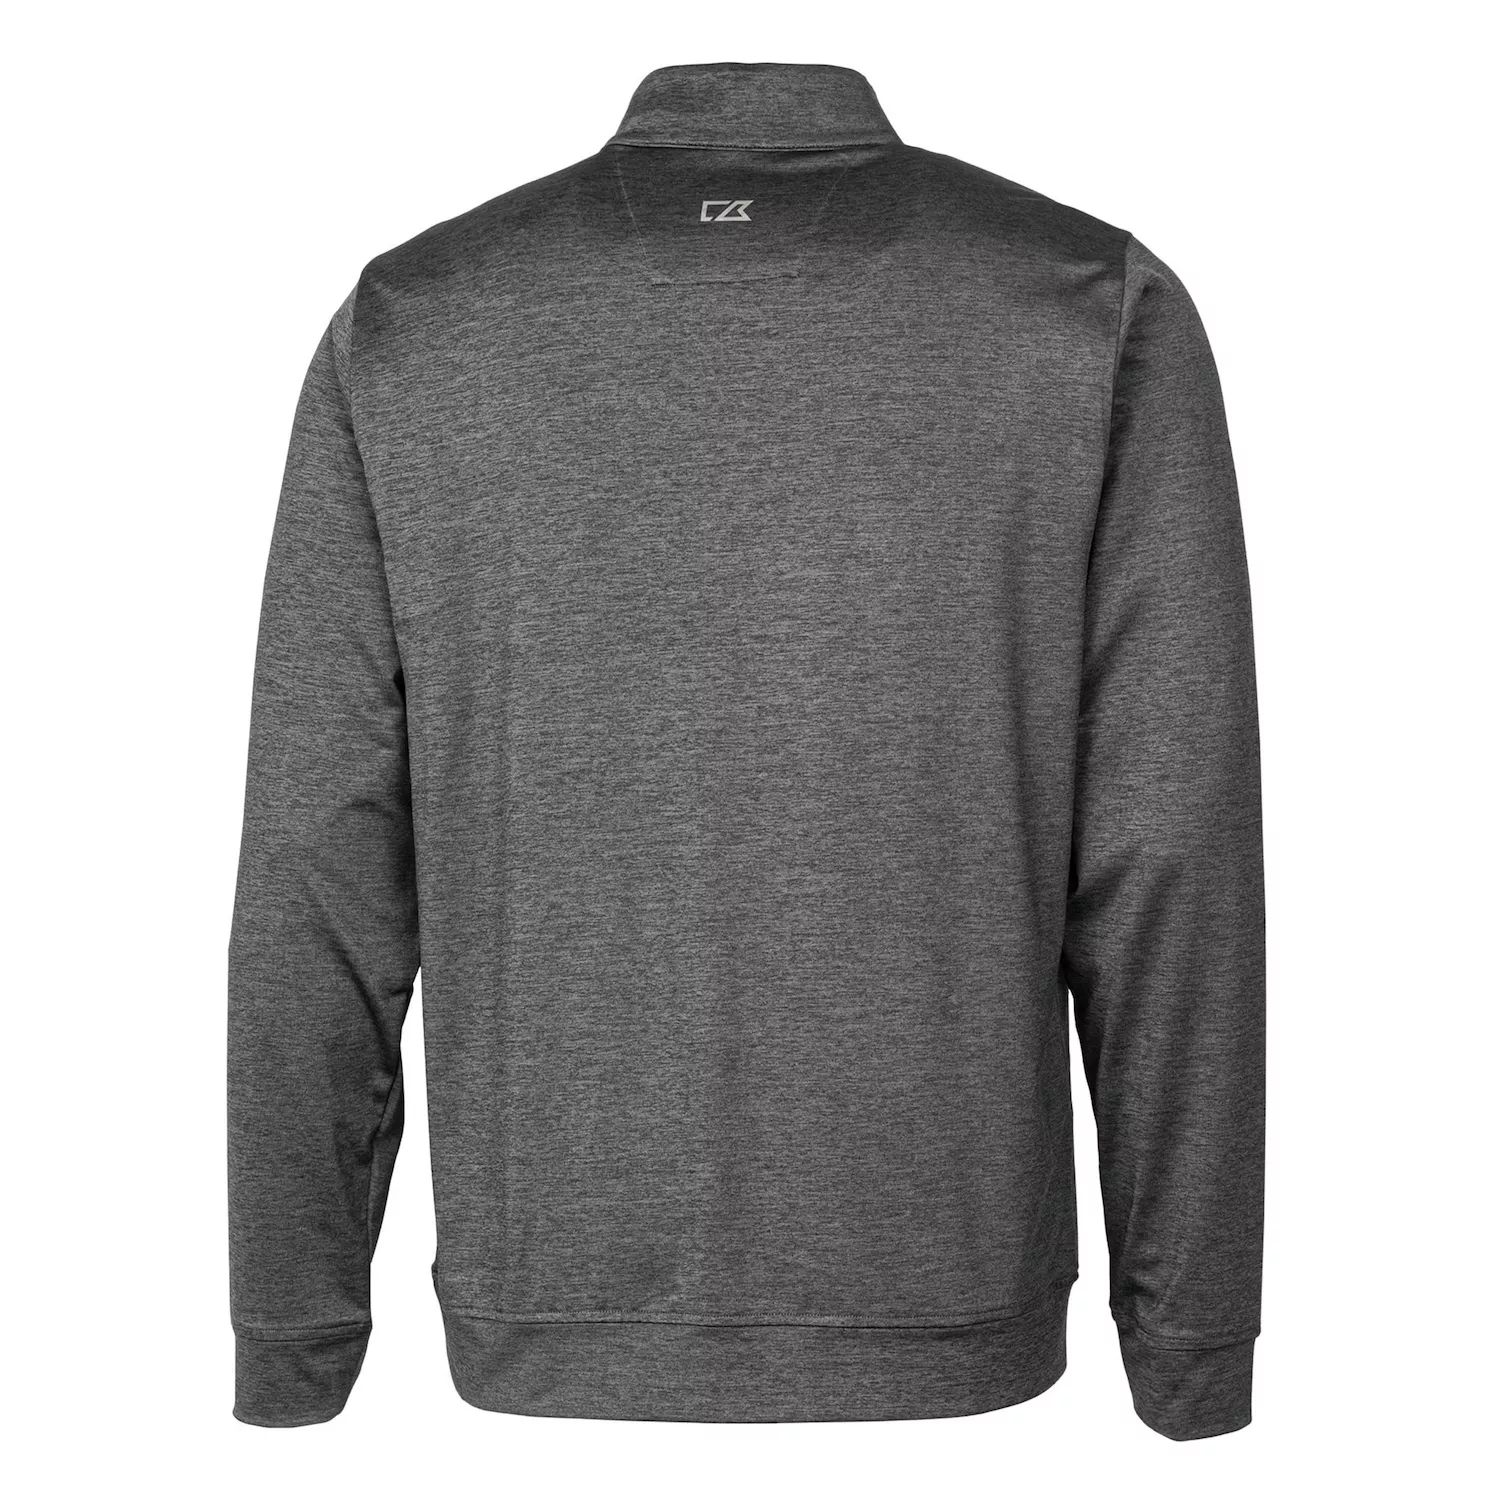 Мужской пуловер с застежкой-молнией в четверть размера Stealth Cutter & Buck brabantia pizza cutter plus blade guar dark grey